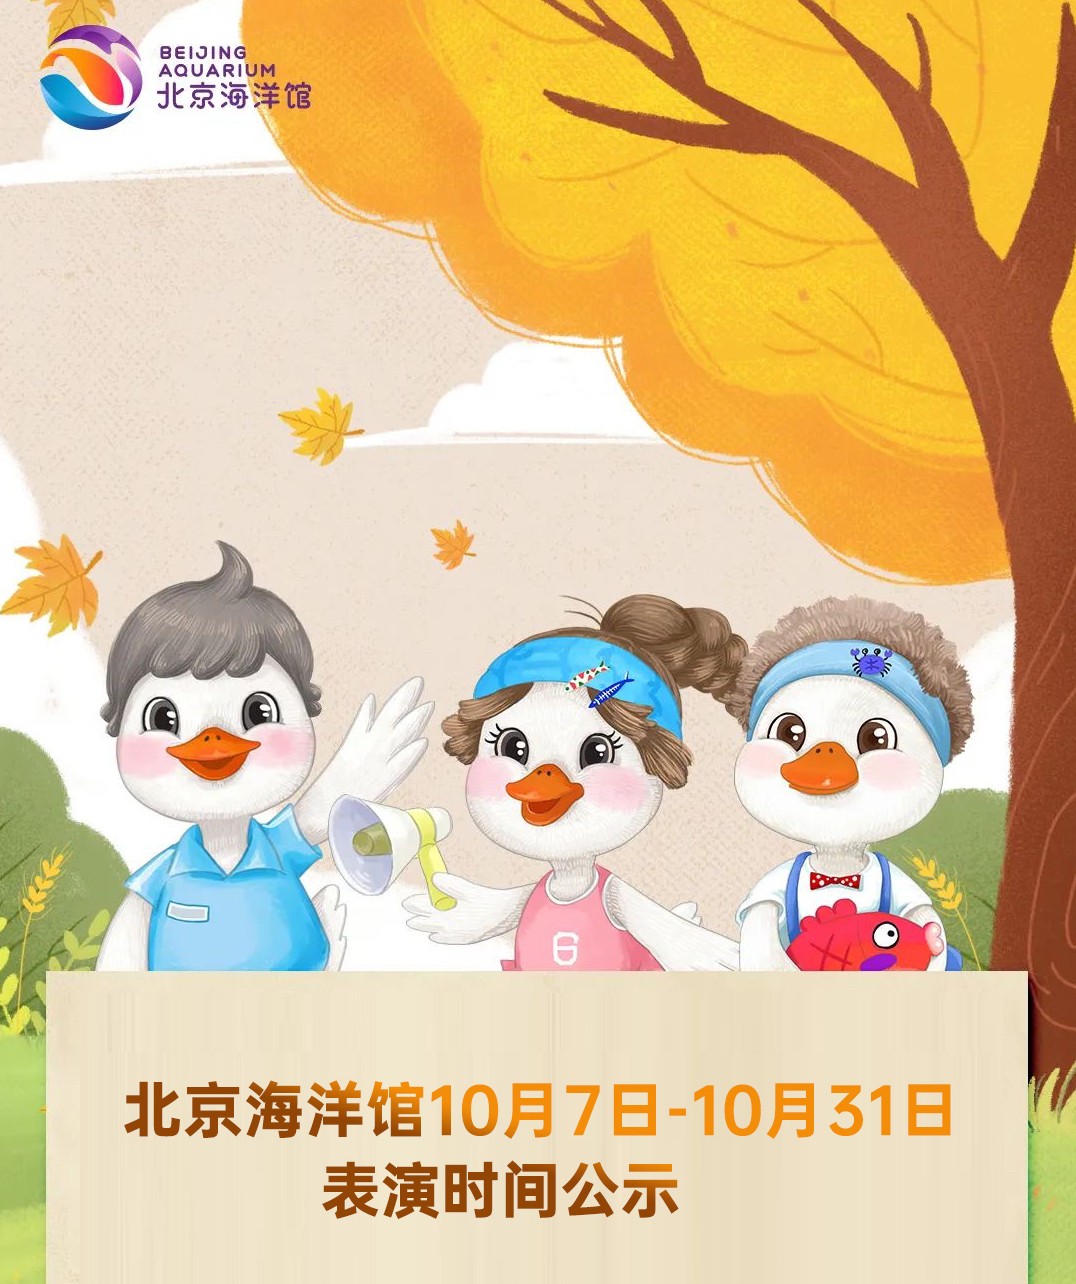 北京海洋馆10月7日-10月31日表演时间公示